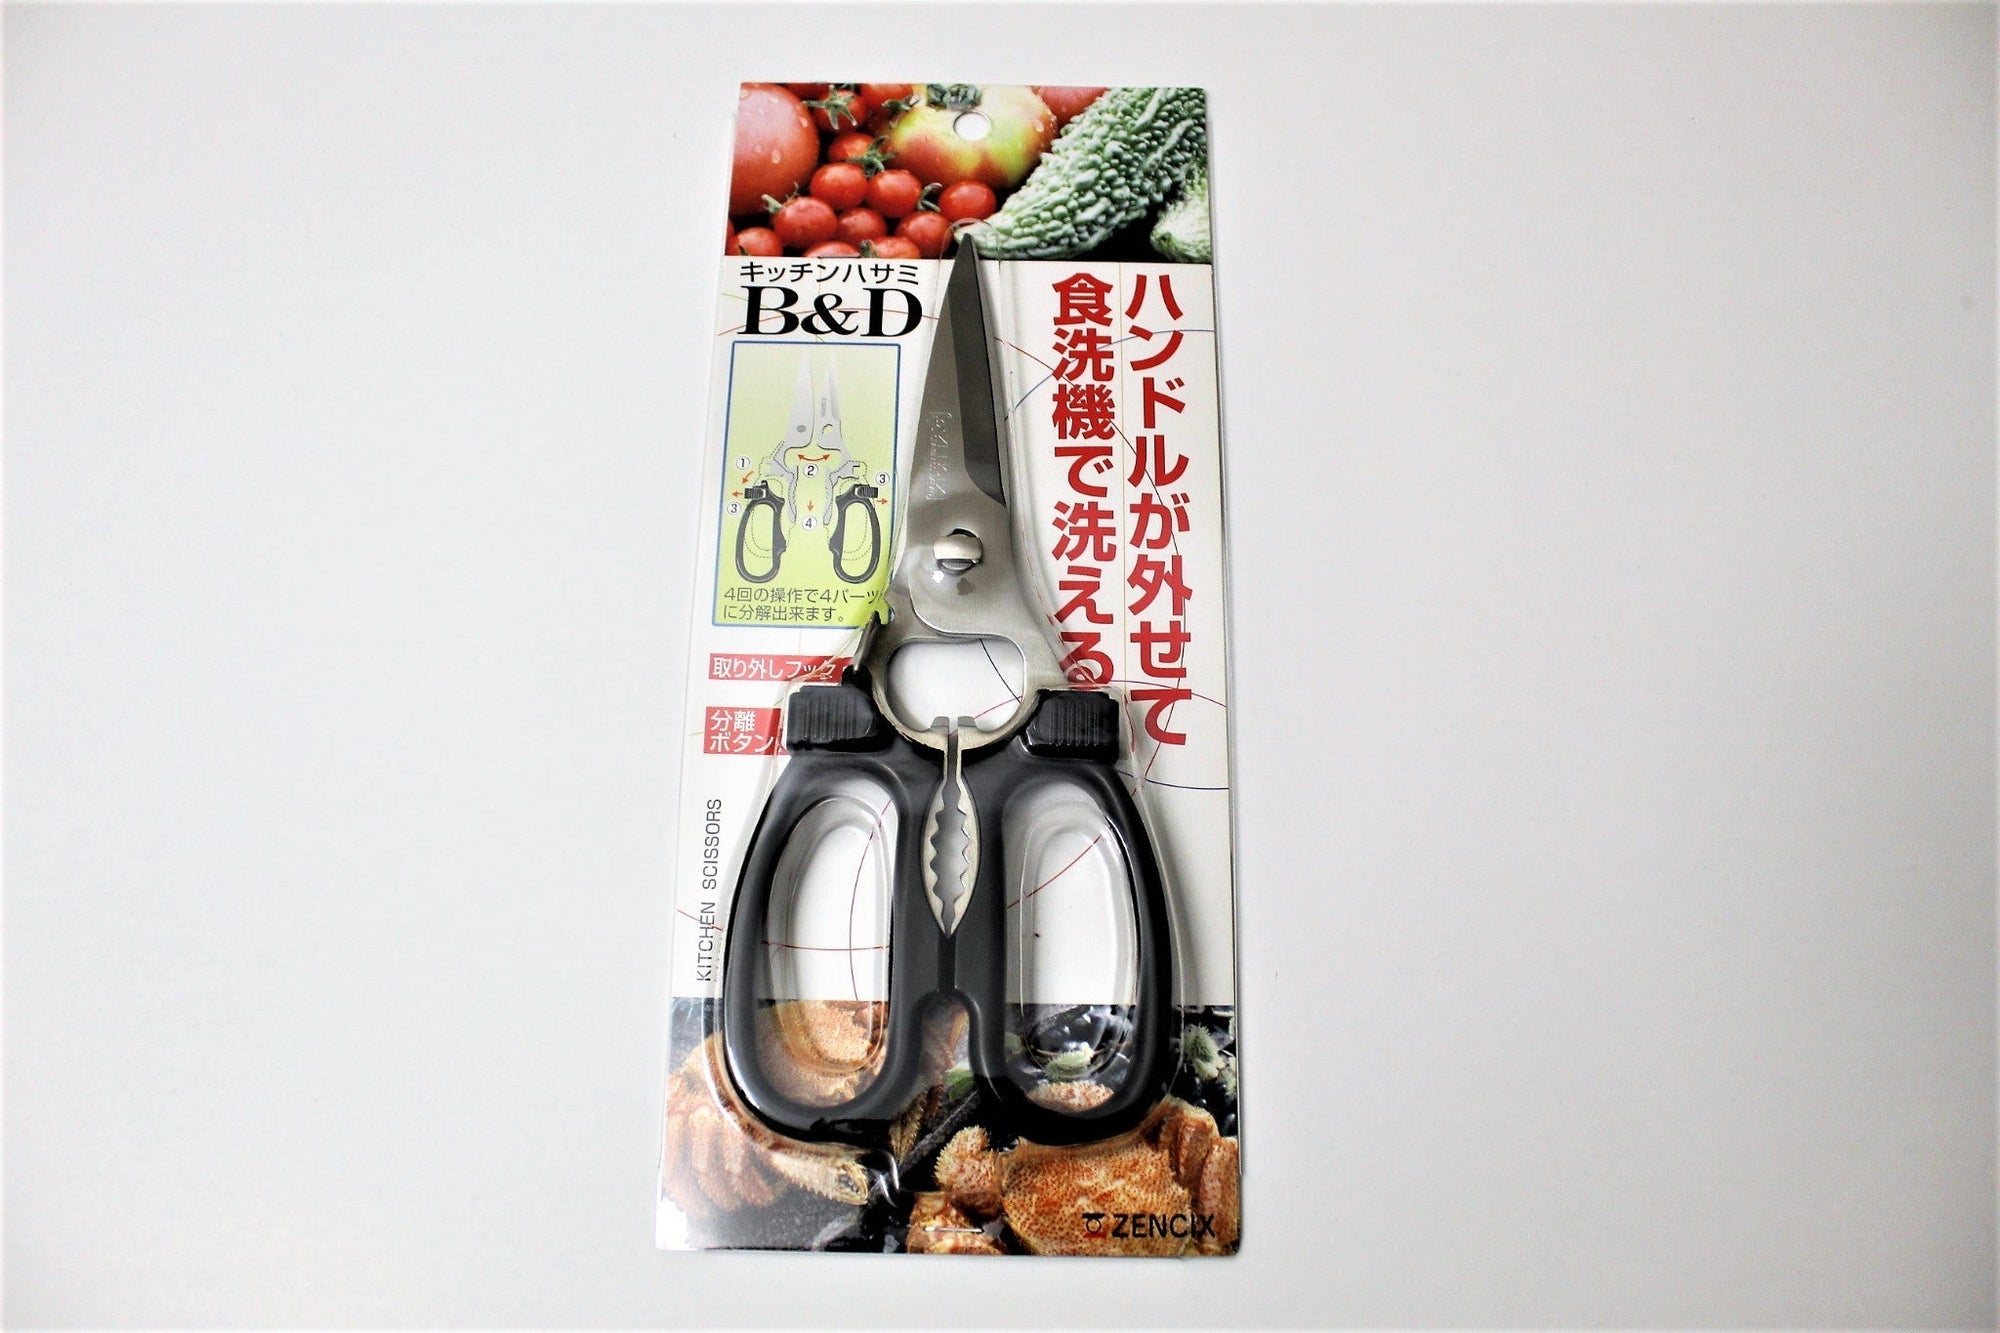 Canary Heavy-Duty Multi-Purpose Kitchen Scissors EL-210 – Japanese Taste